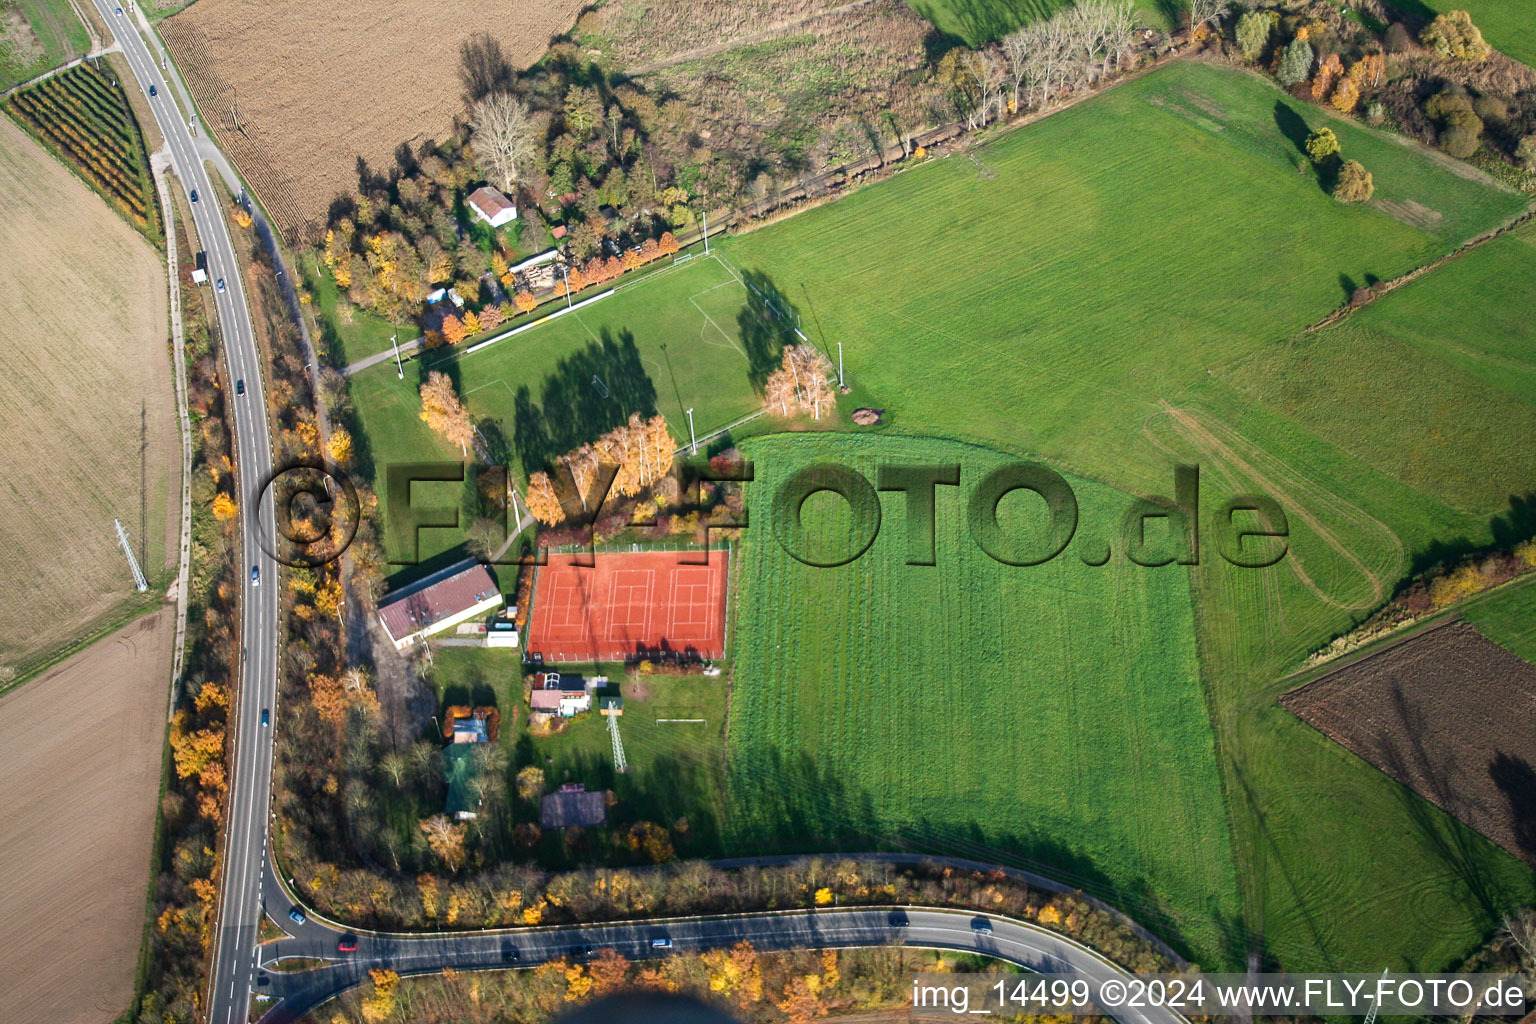 Vue aérienne de Terrain de sport à la sortie d'autoroute à Erlenbach bei Kandel dans le département Rhénanie-Palatinat, Allemagne